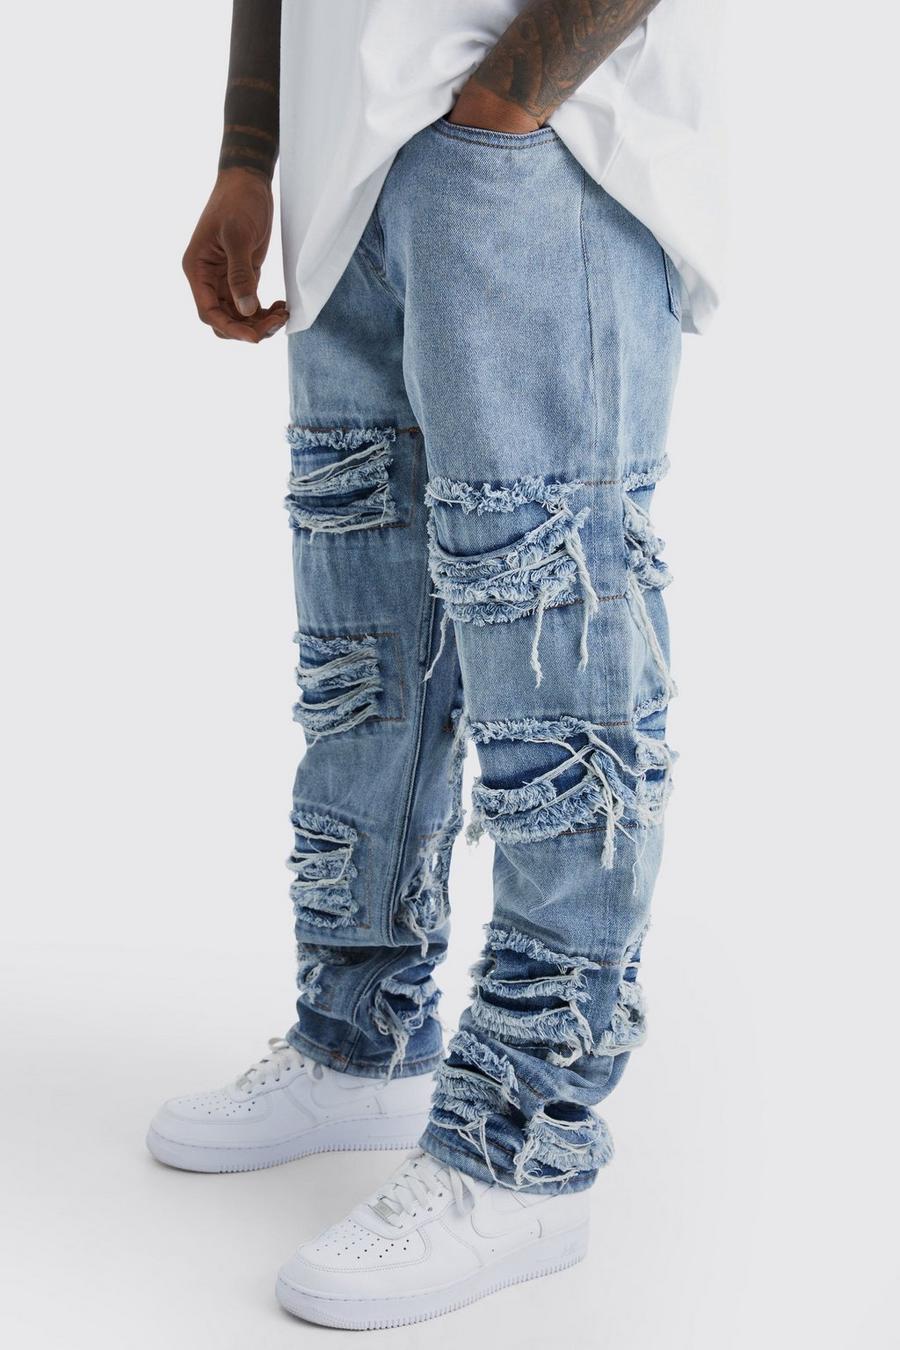 Lockere ausgefranste Jeans, Antique blue